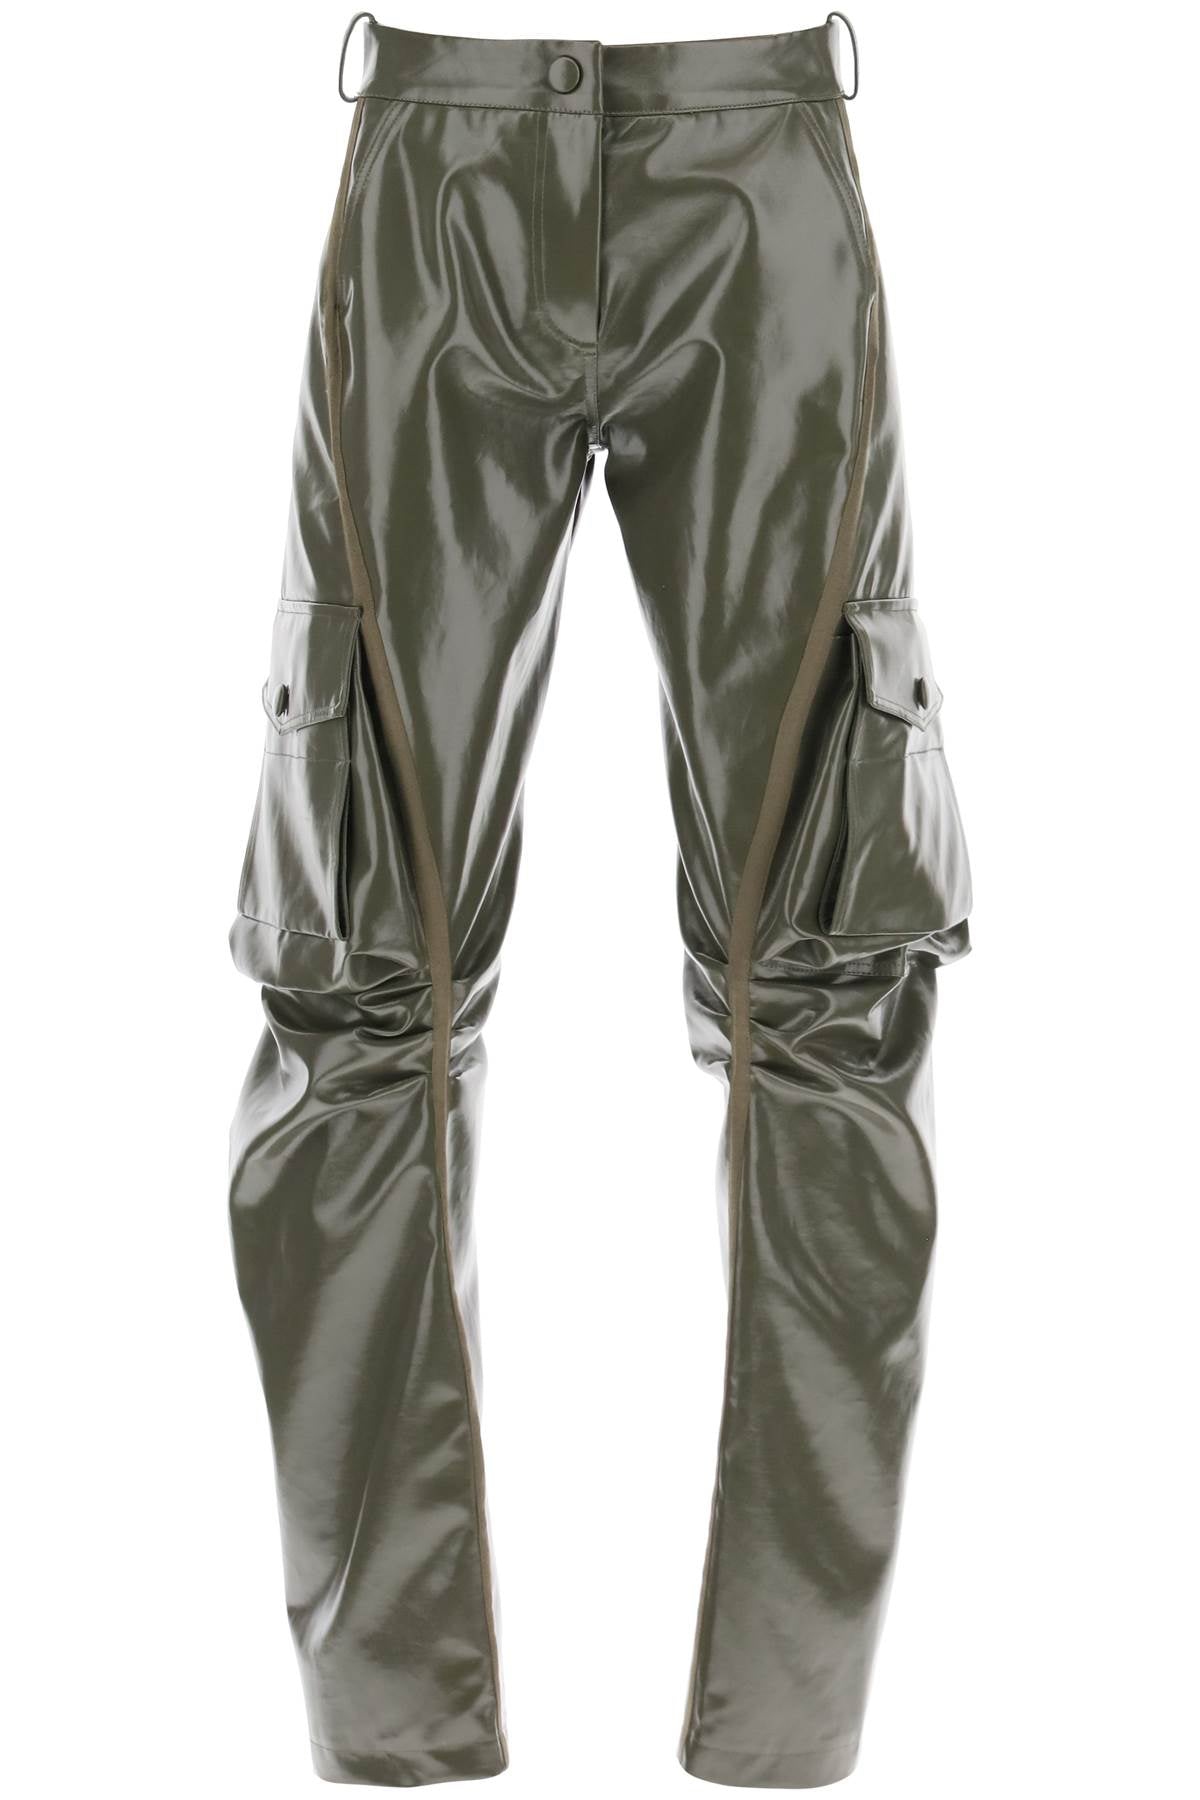 Mvp wardrobe montenapoleone cargo pants-0